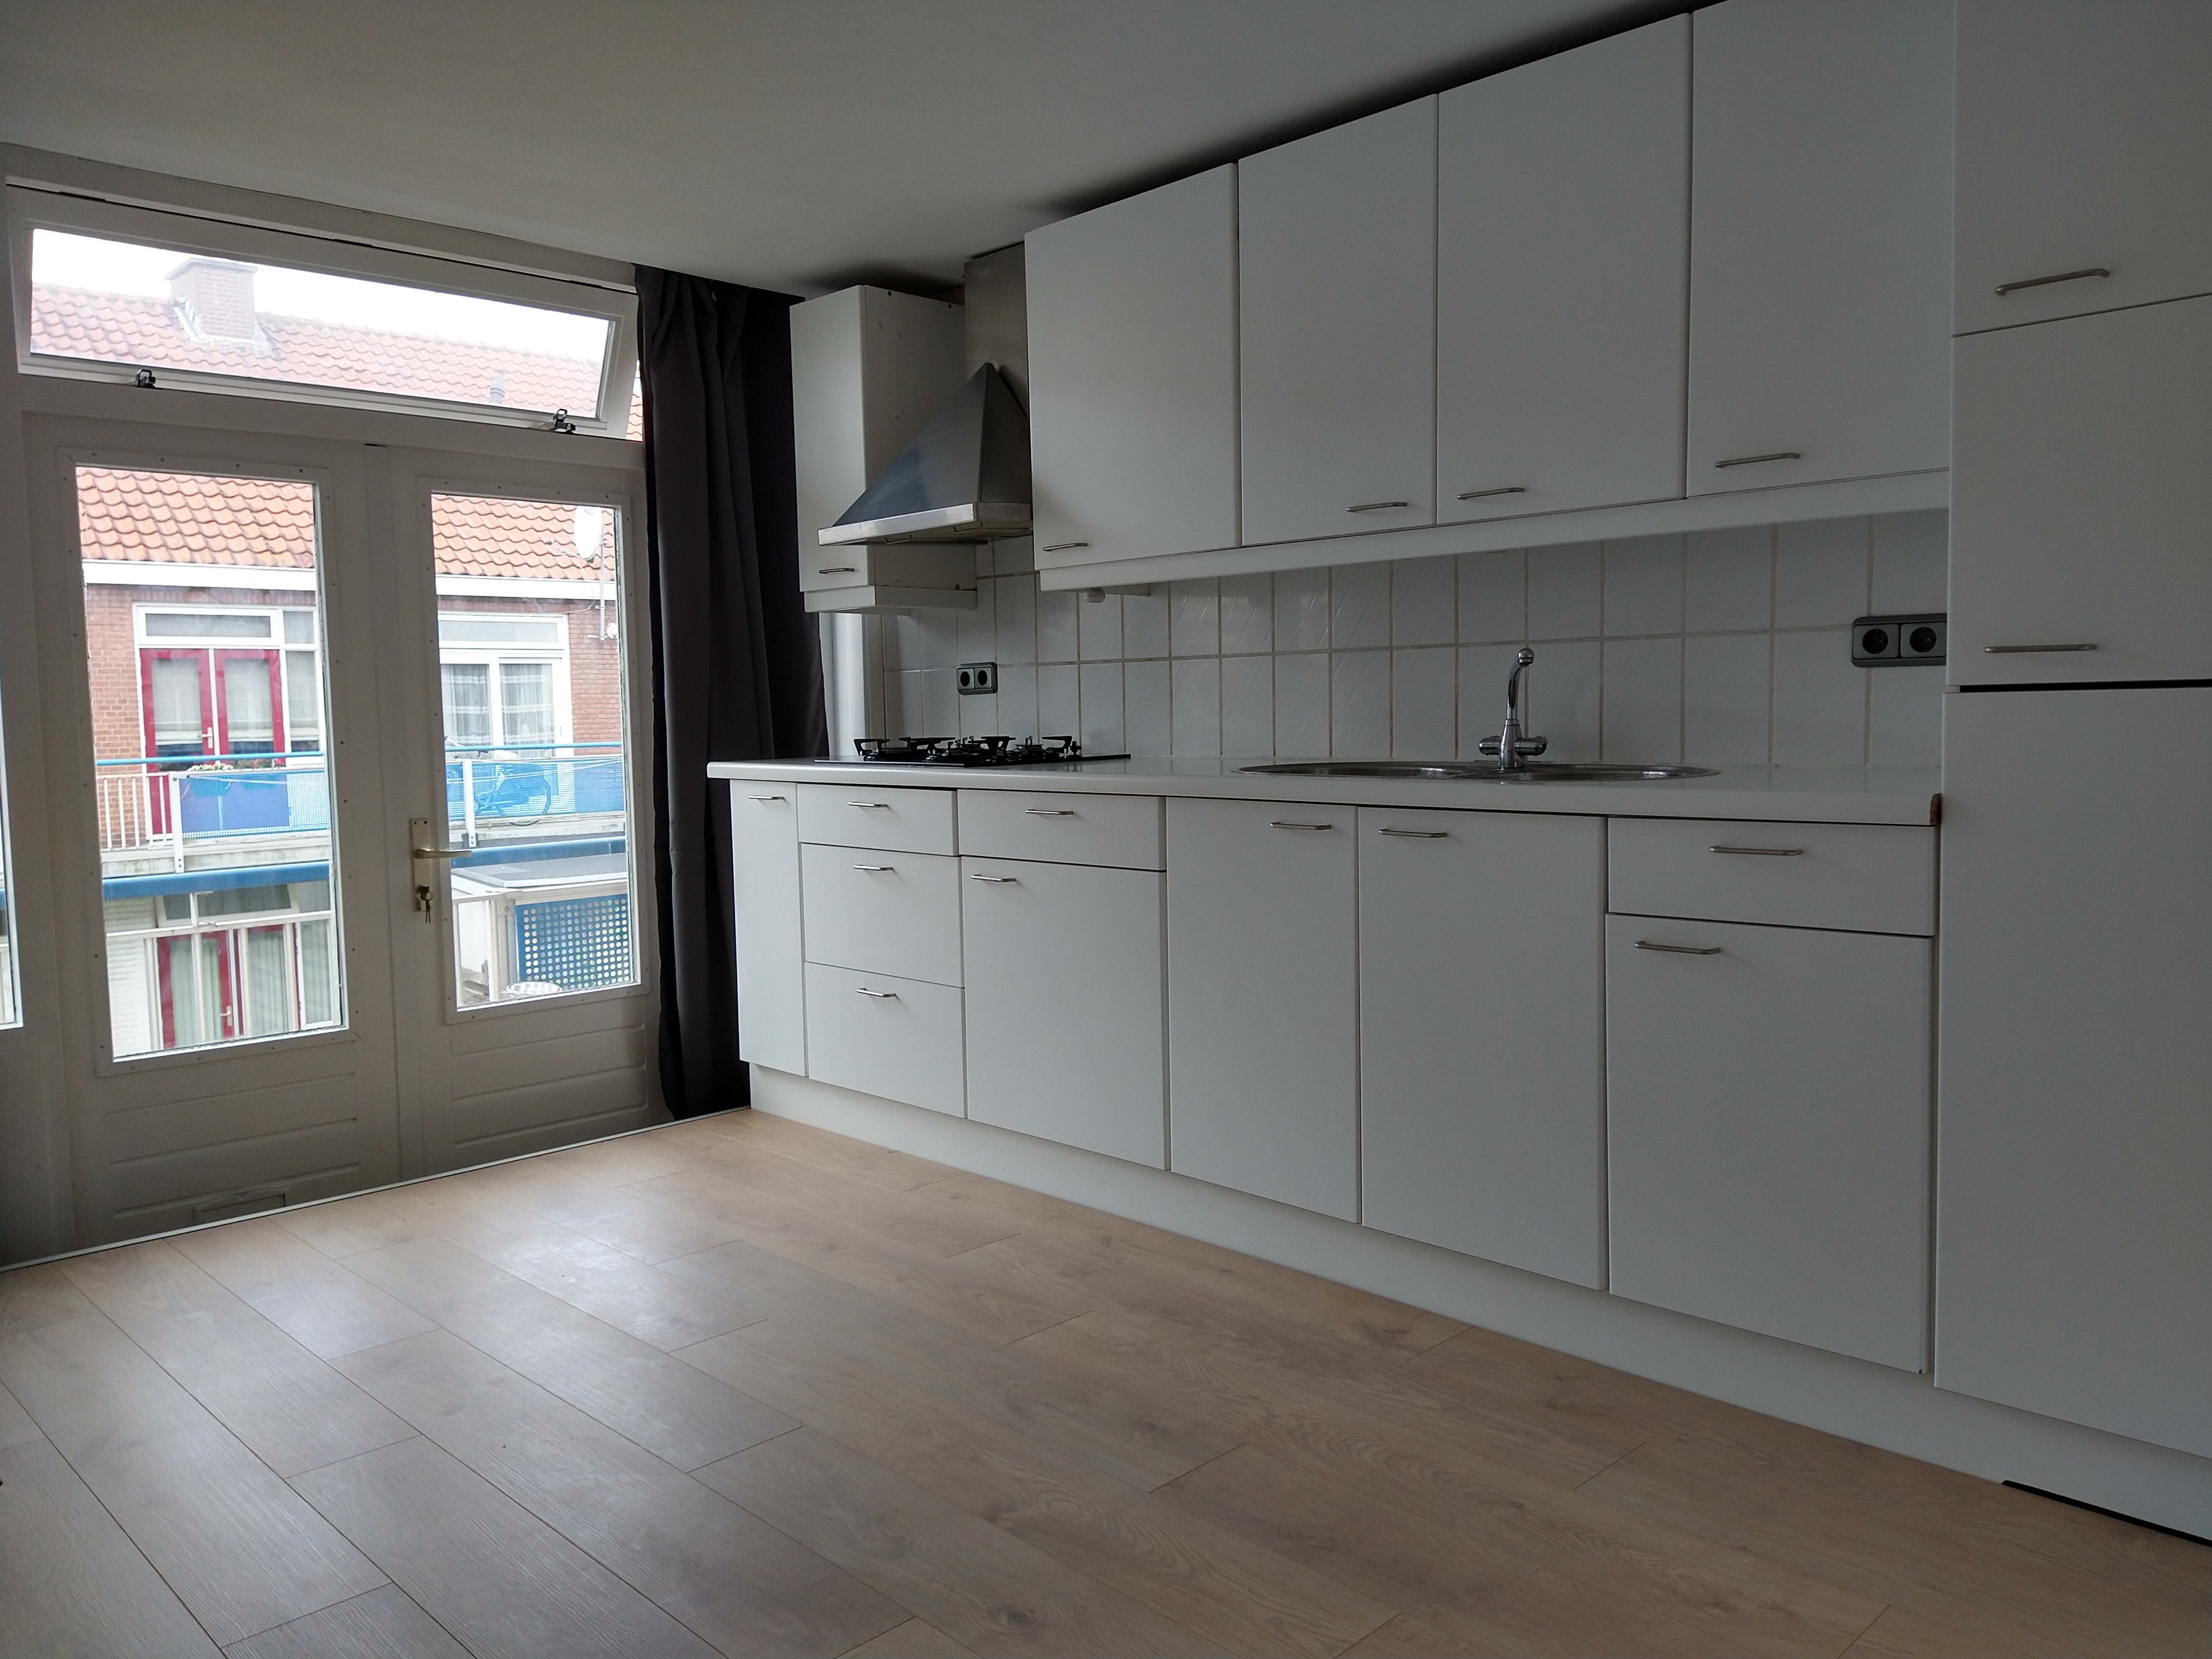 Woning / appartement - Den Haag - Van Zeggelenlaan 281